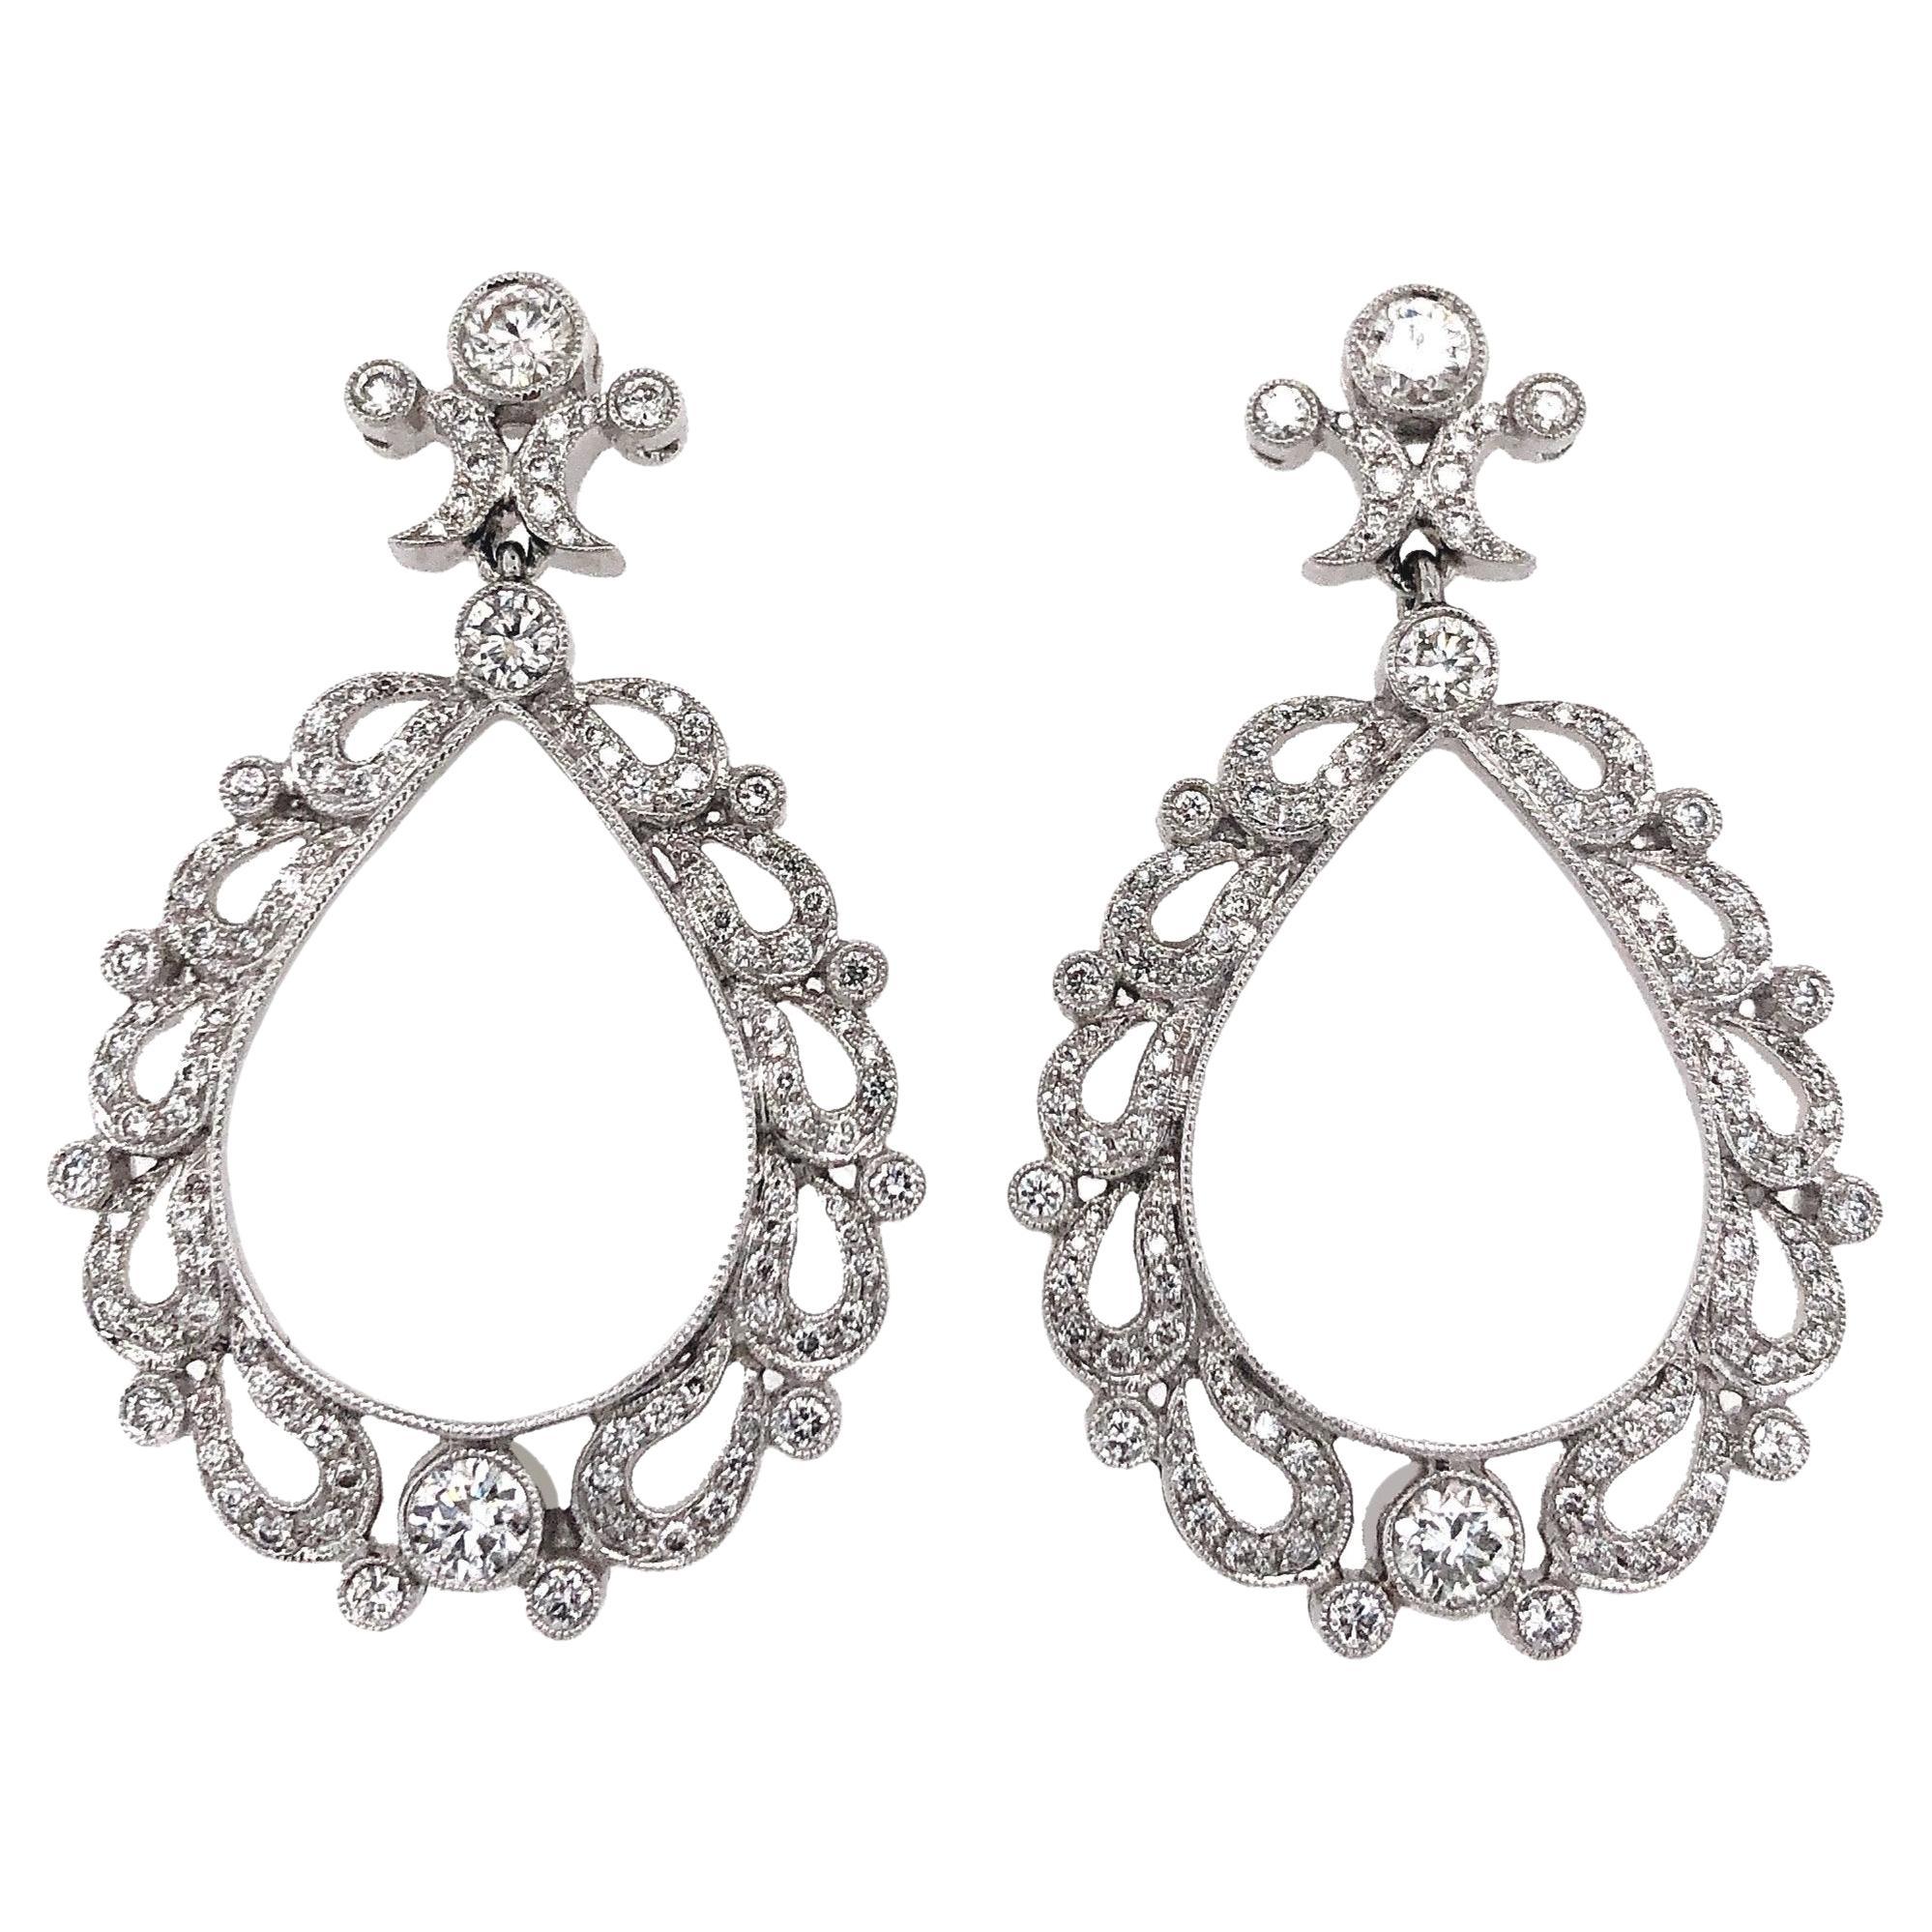 Antique Inspired Chandelier Drop Pavé Diamond Earrings 1.99 Carat 18k